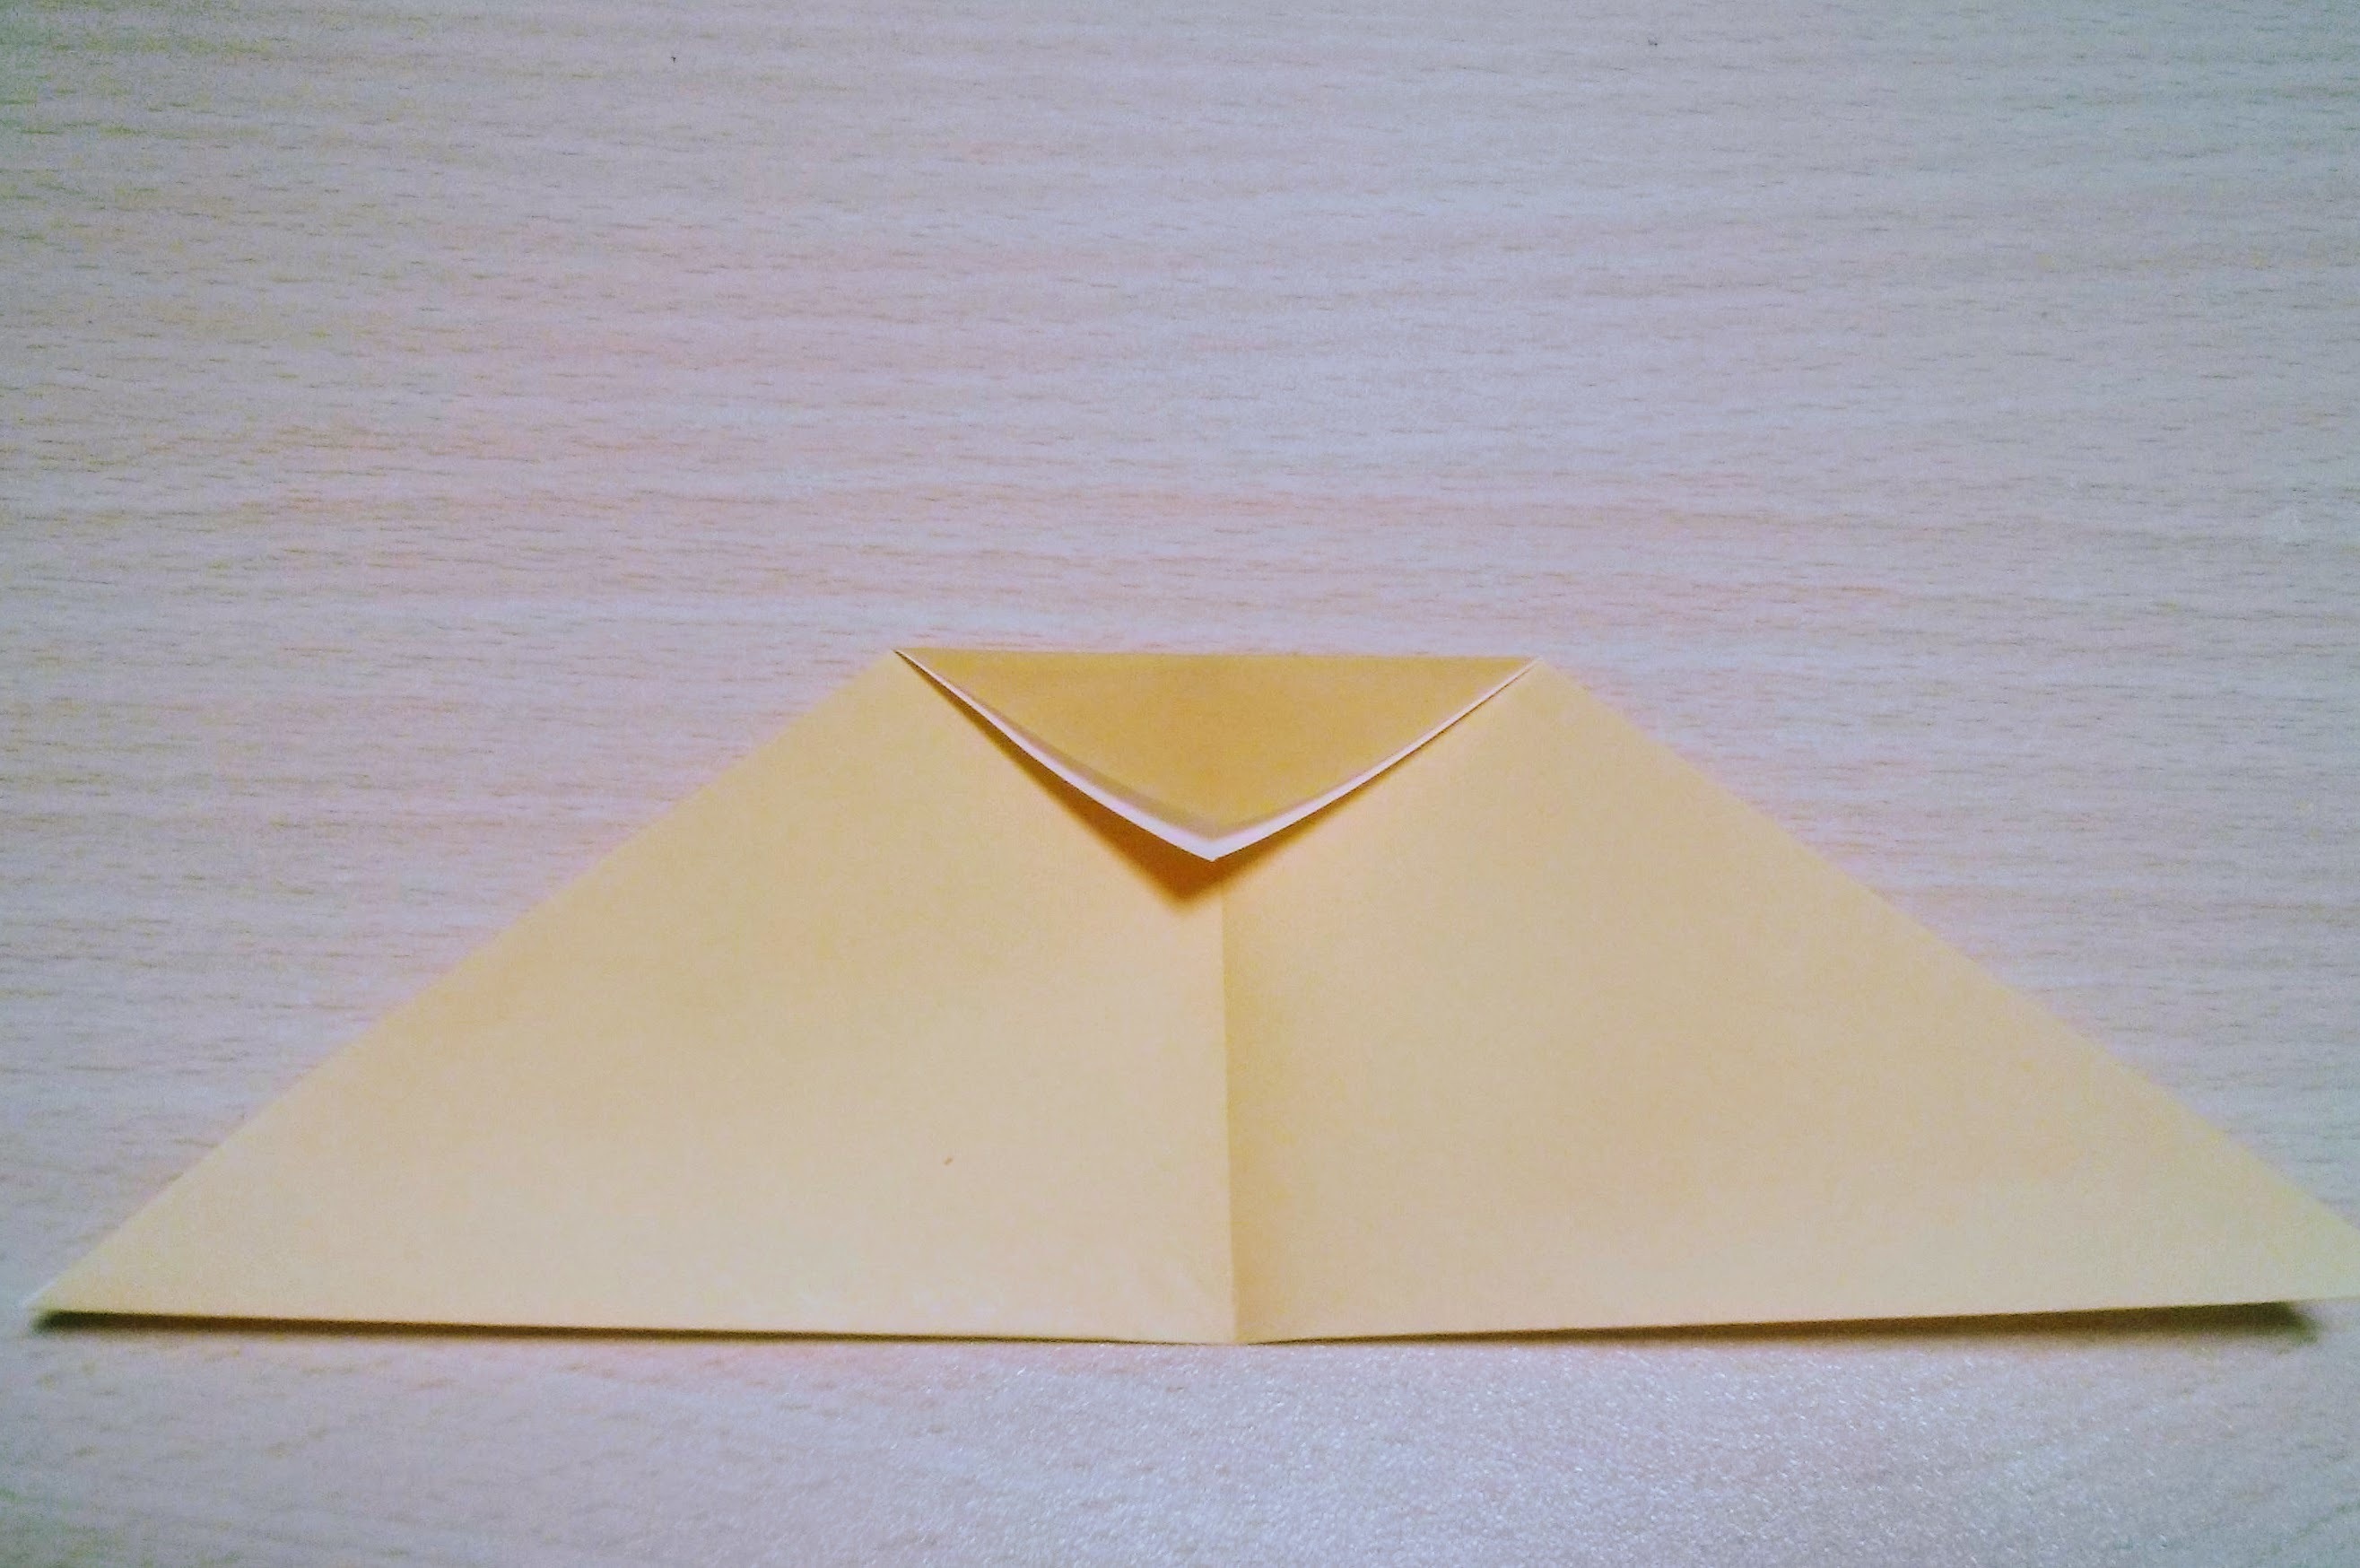 ジブリキャラクター トロロ の折り紙での折り方 平面 立体の作り方まとめ 暮らし の